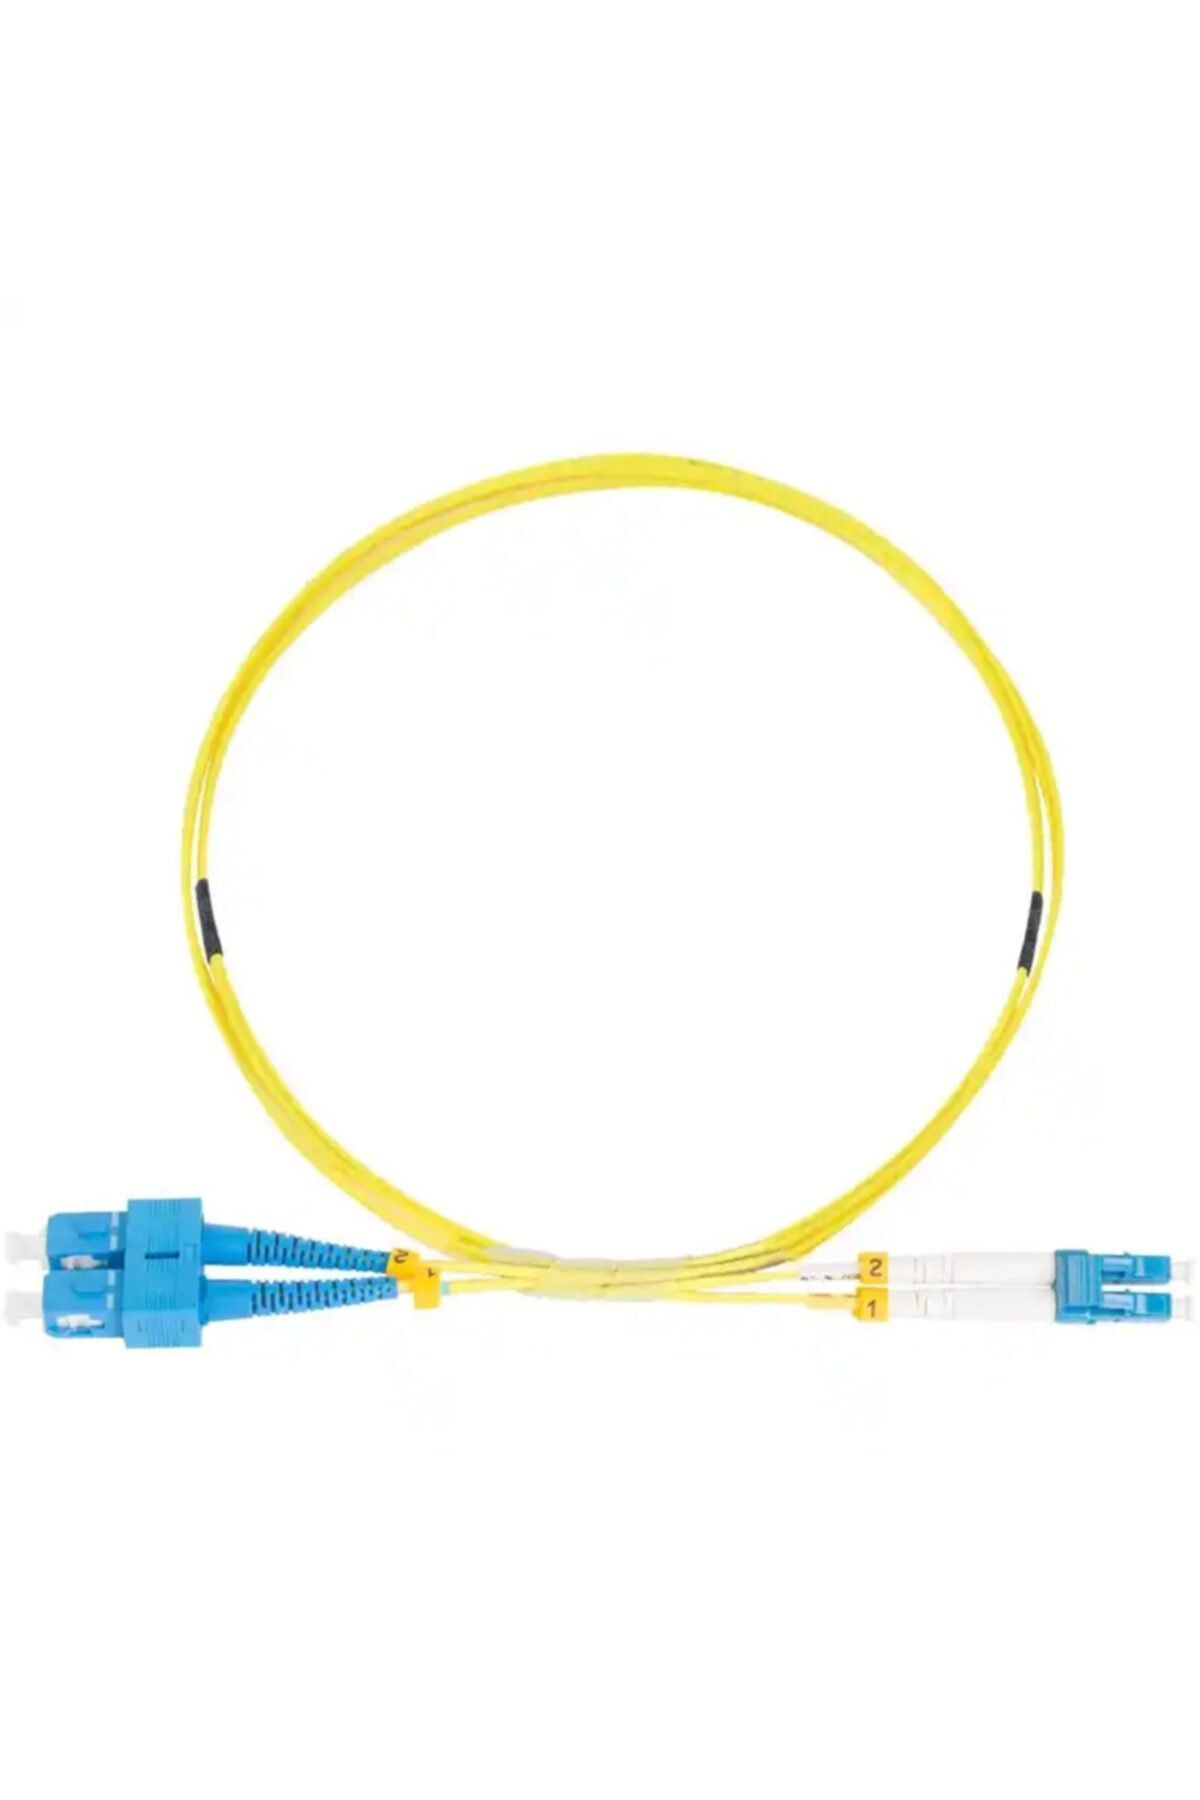 Cable Sc-lc Sm Dx Patchcord 2.0mm Lszh G652d(1016)yellow L1m